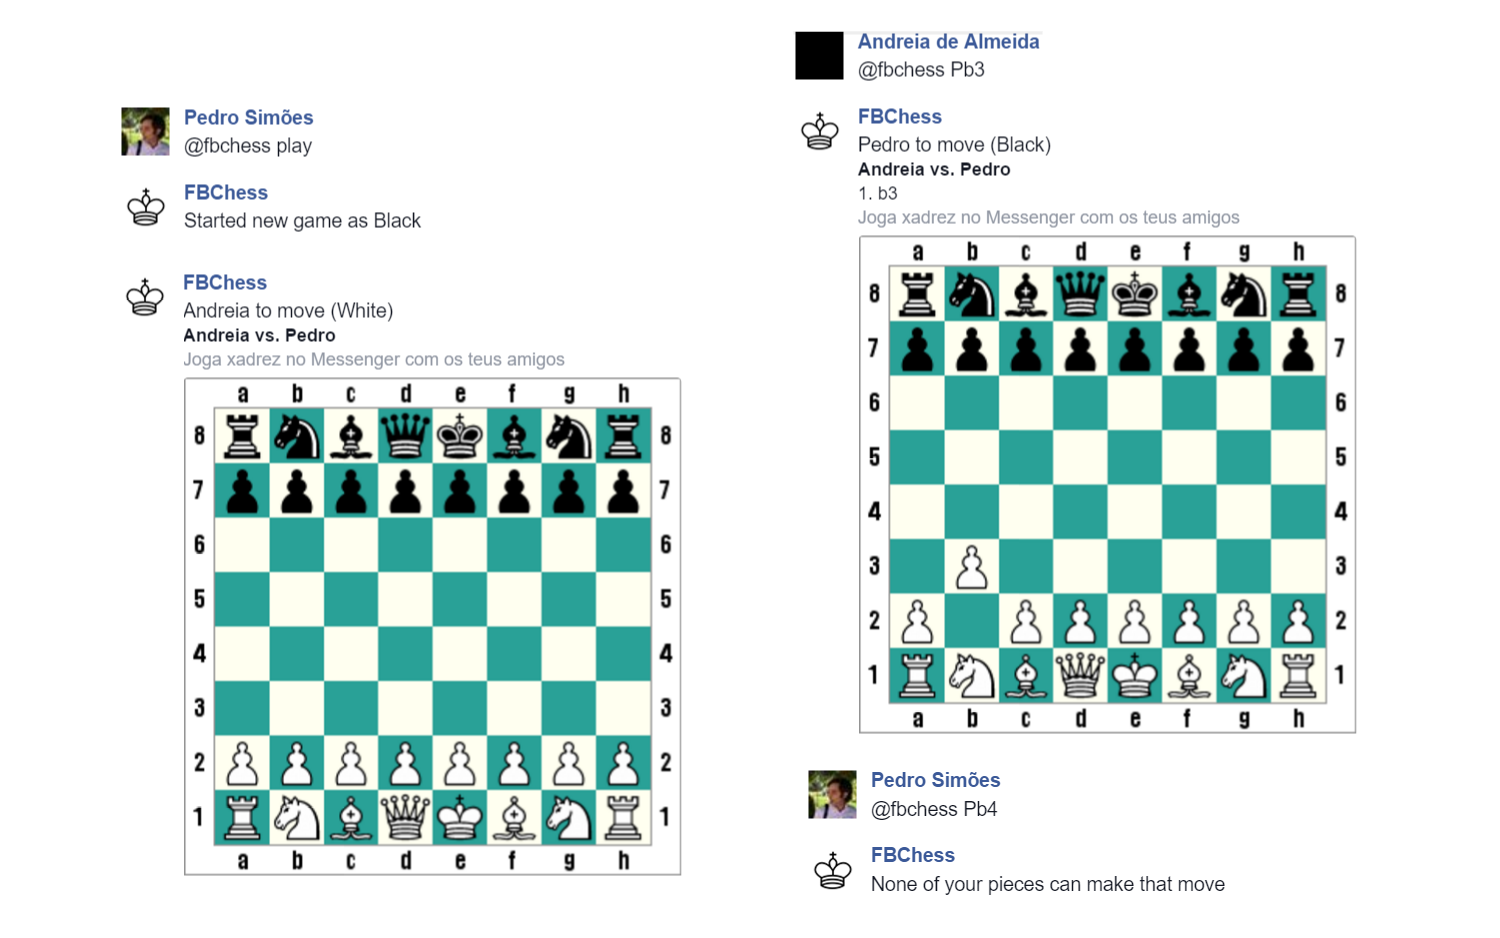 Jogue xadrez no Facebook usando código secreto - Revista Galileu